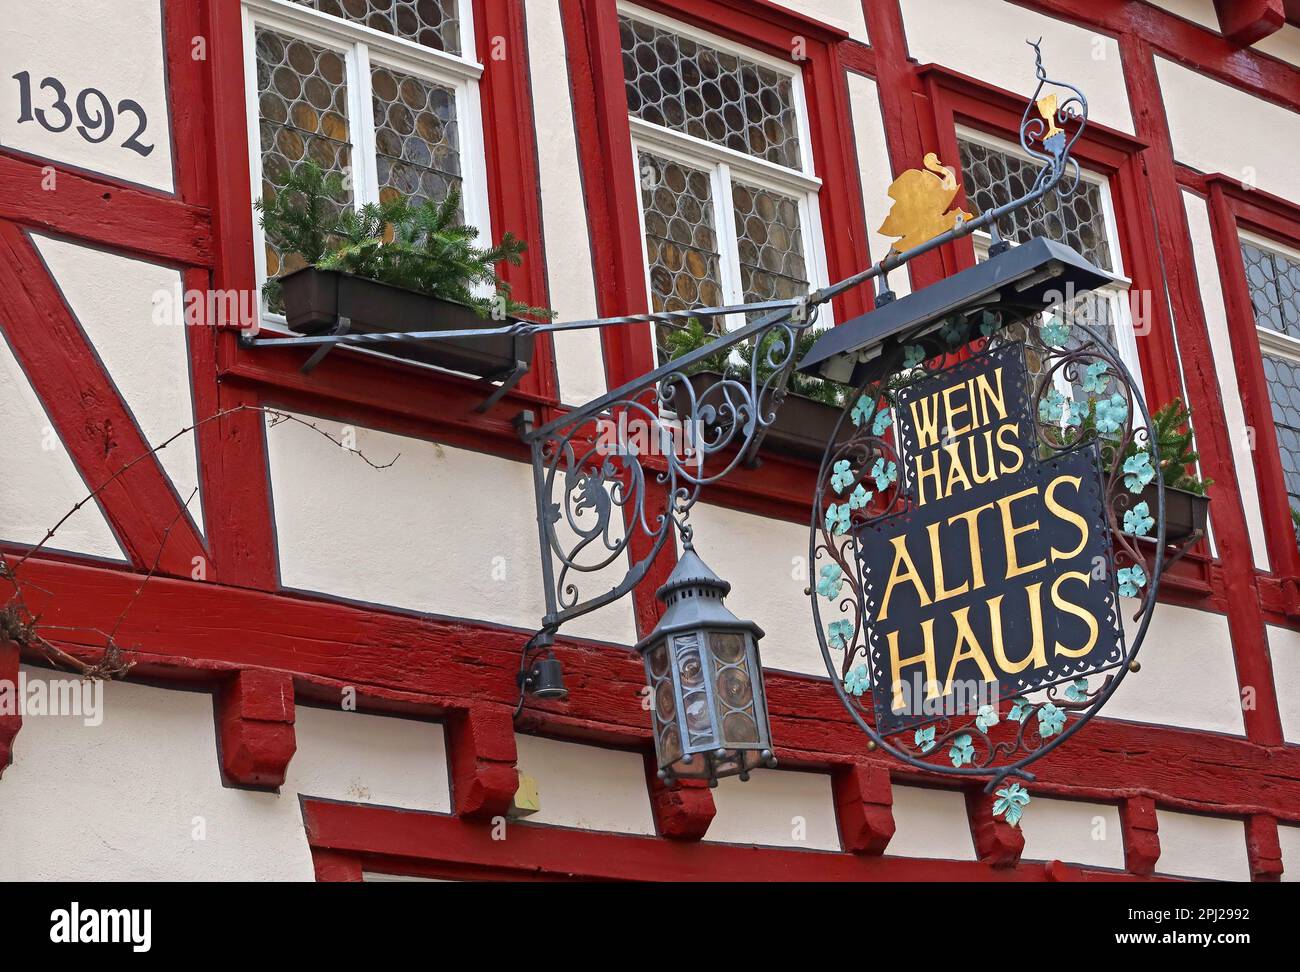 Wein Haus Altes Haus - 1392, Bacharach (Bacharach am Rhein), Mainz-Bingen Bezirk, Deutschland Stockfoto